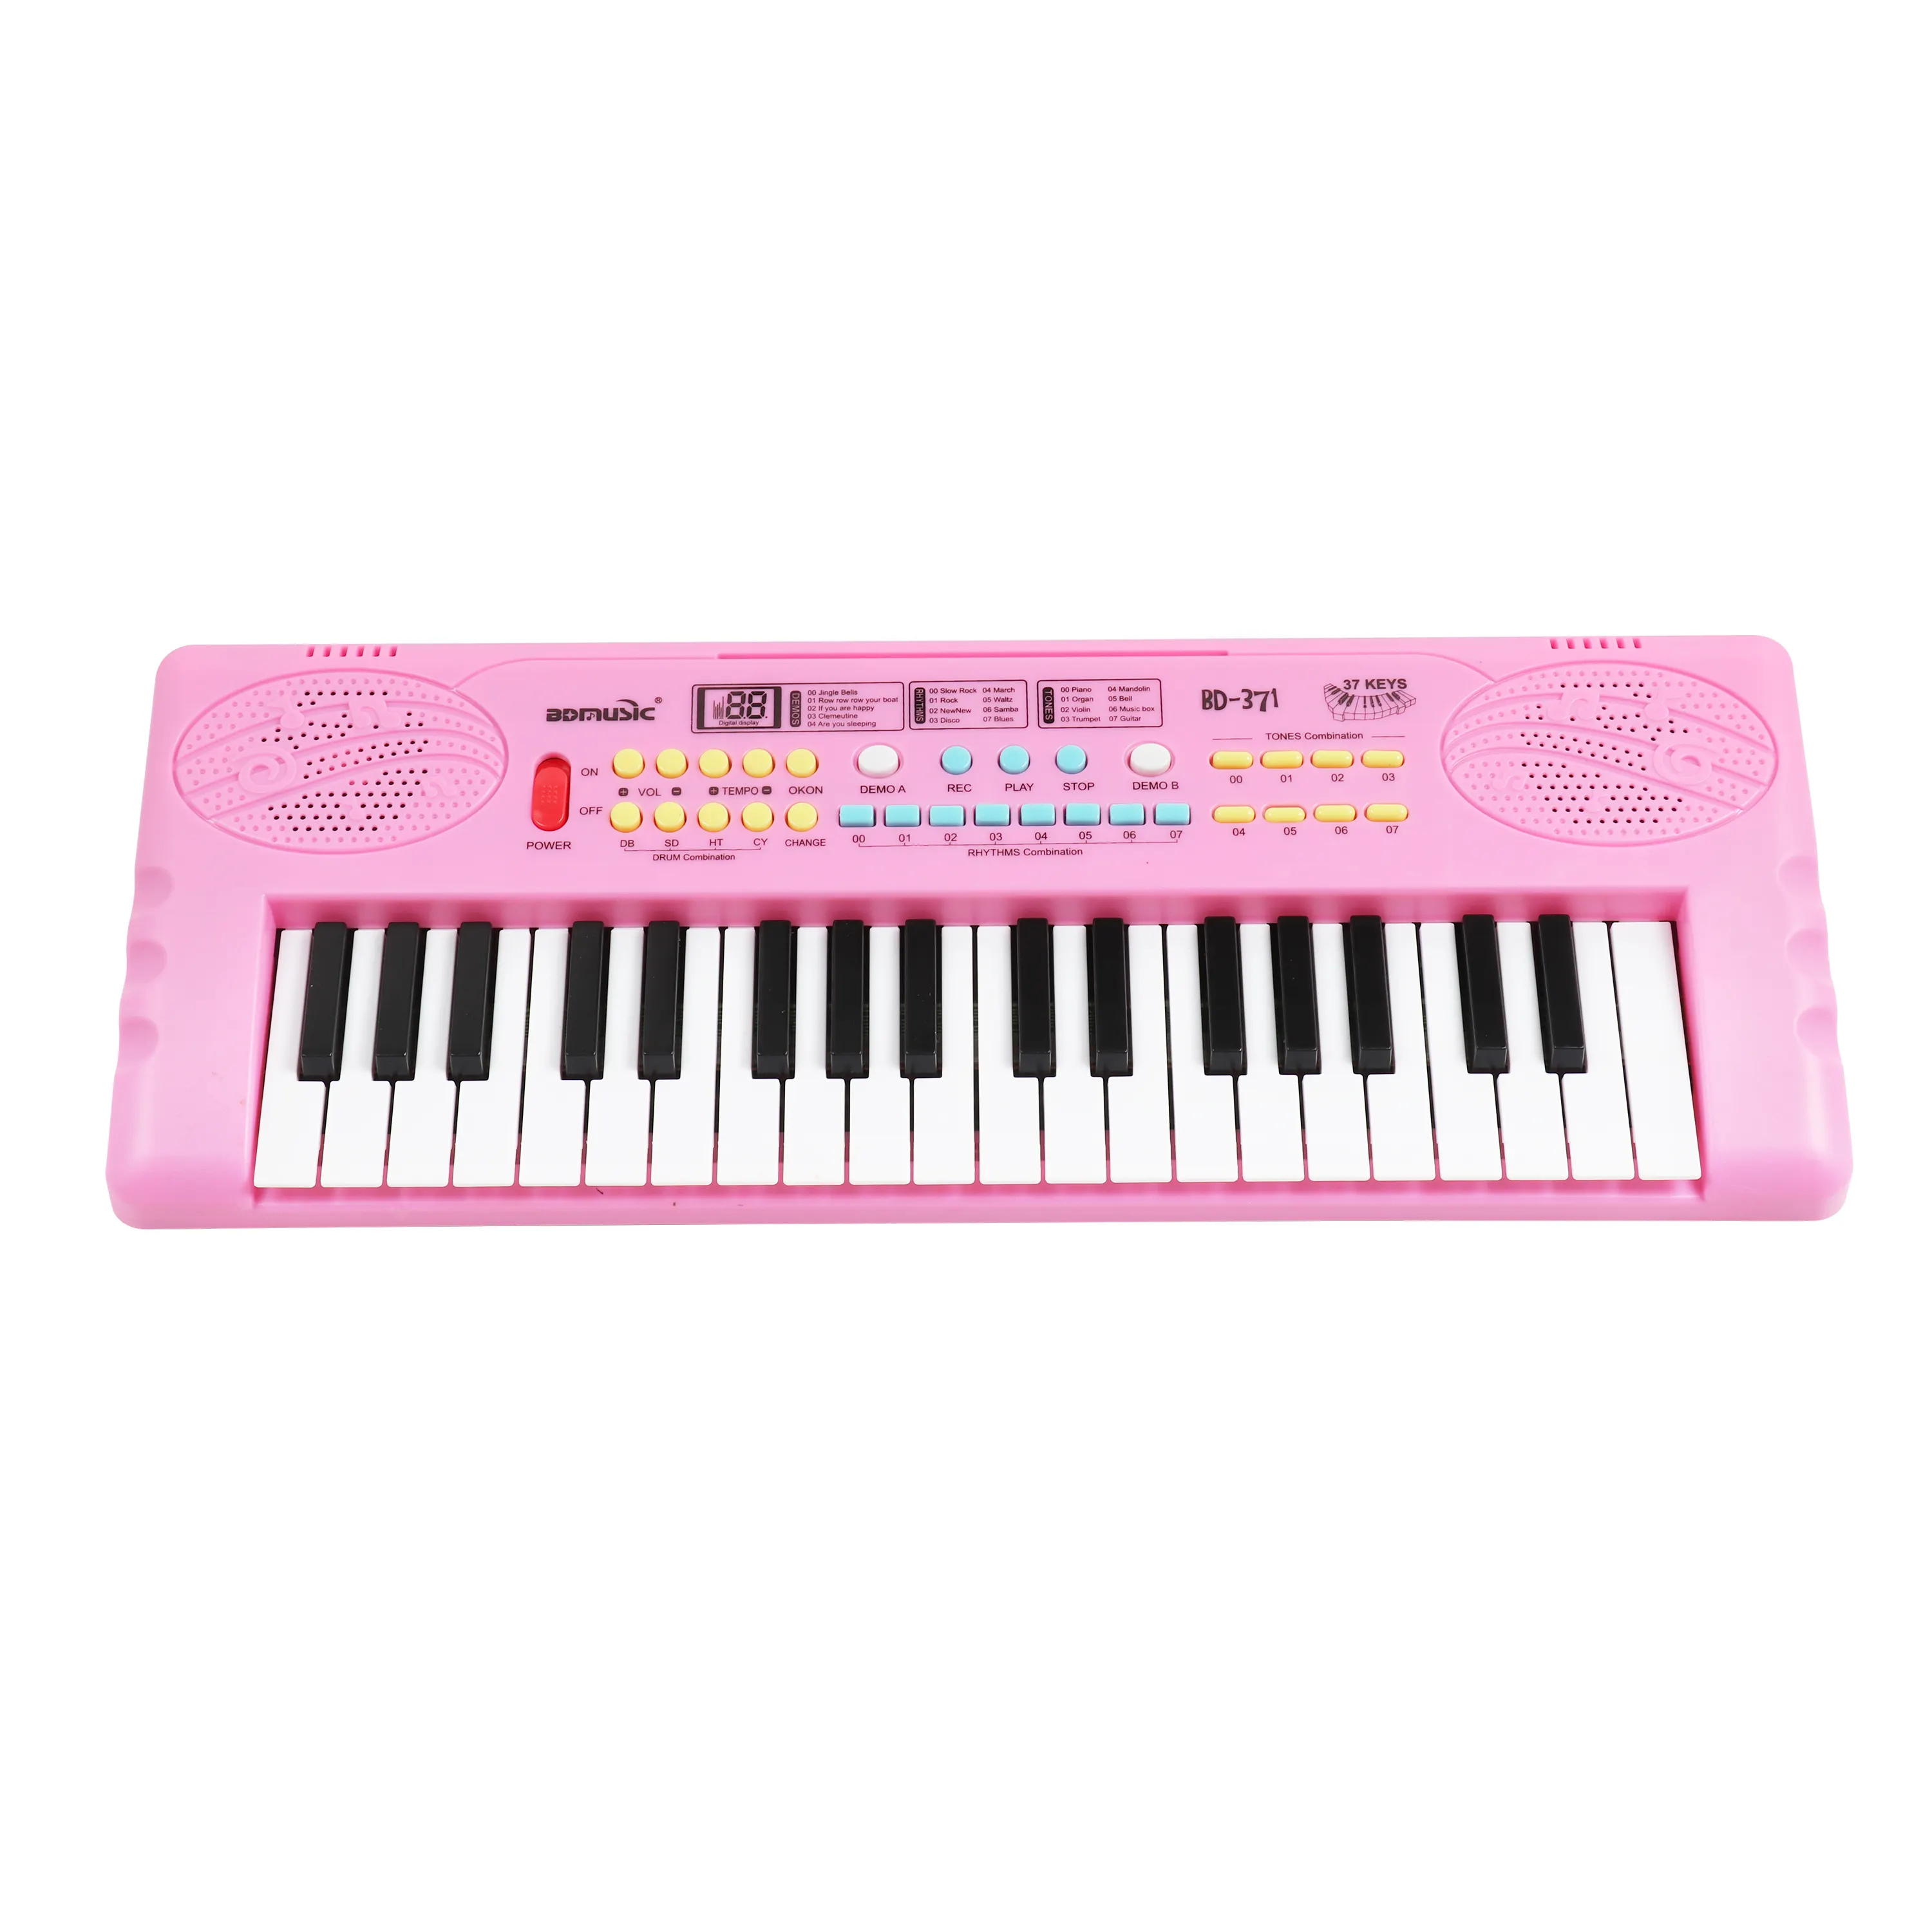 BDMUSIC игрушка пианино 37 клавиш музыкальная клавиатура игрушка цифровое пианино сделано в Китае игрушка электронный орган мини пианино клавиатура для детей